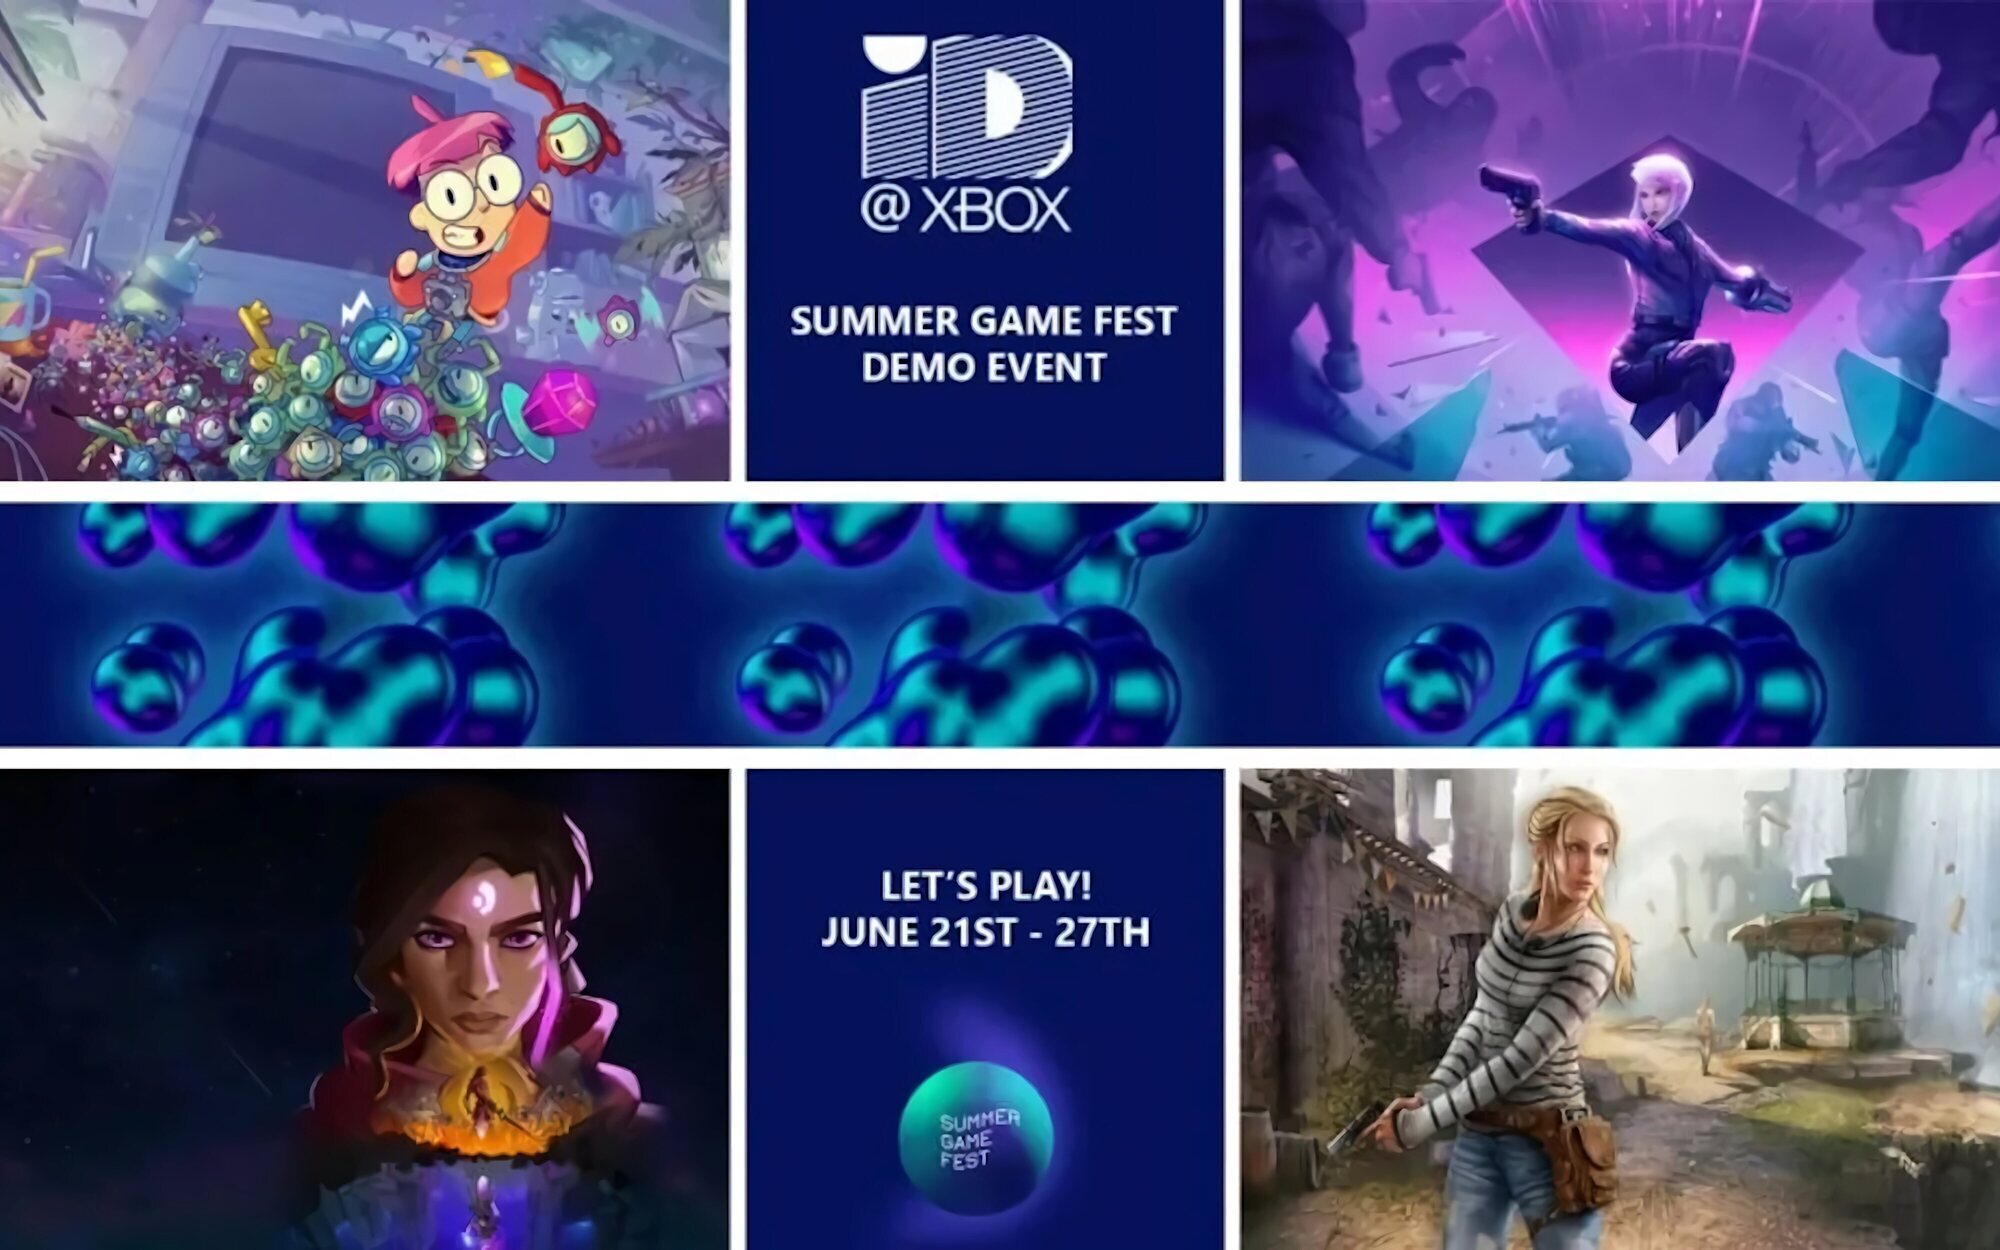 La próxima semana empieza el Xbox Summer Game Fest: más de 30 demos de juegos Indie nuevos